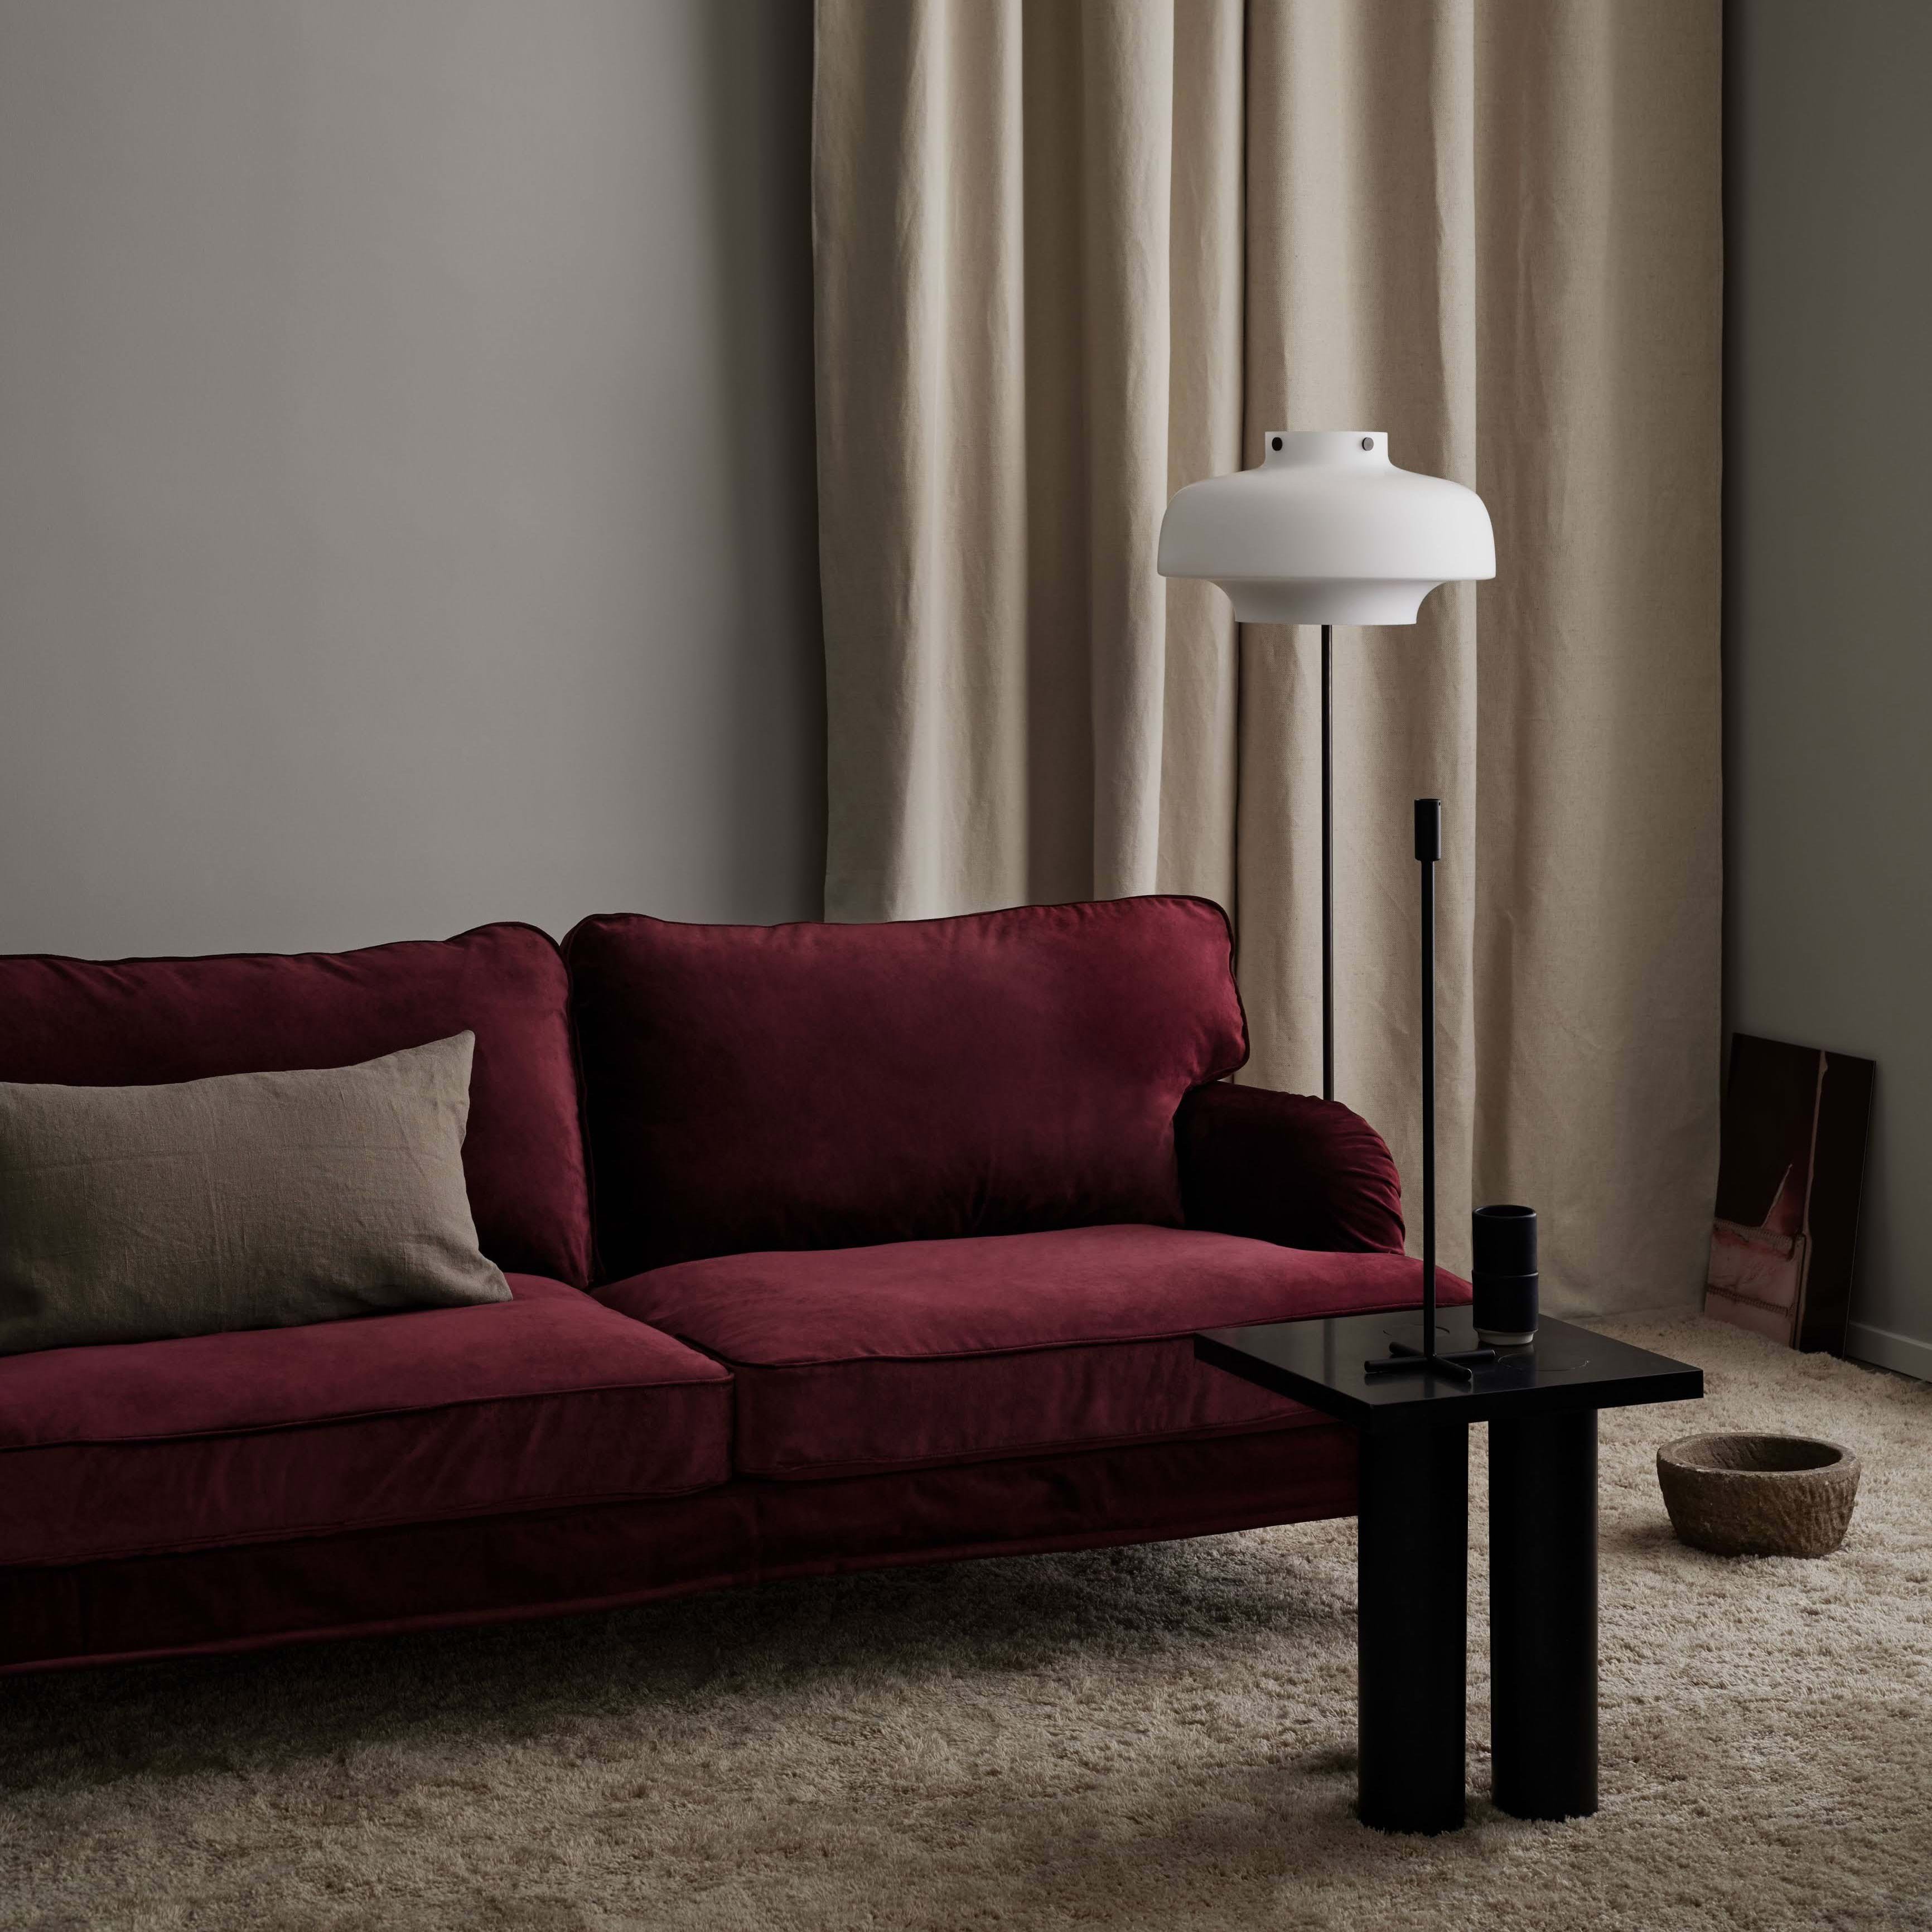 En Plaatsen voorbeeld IKEA Stocksund sofa review by Bemz | Bemz